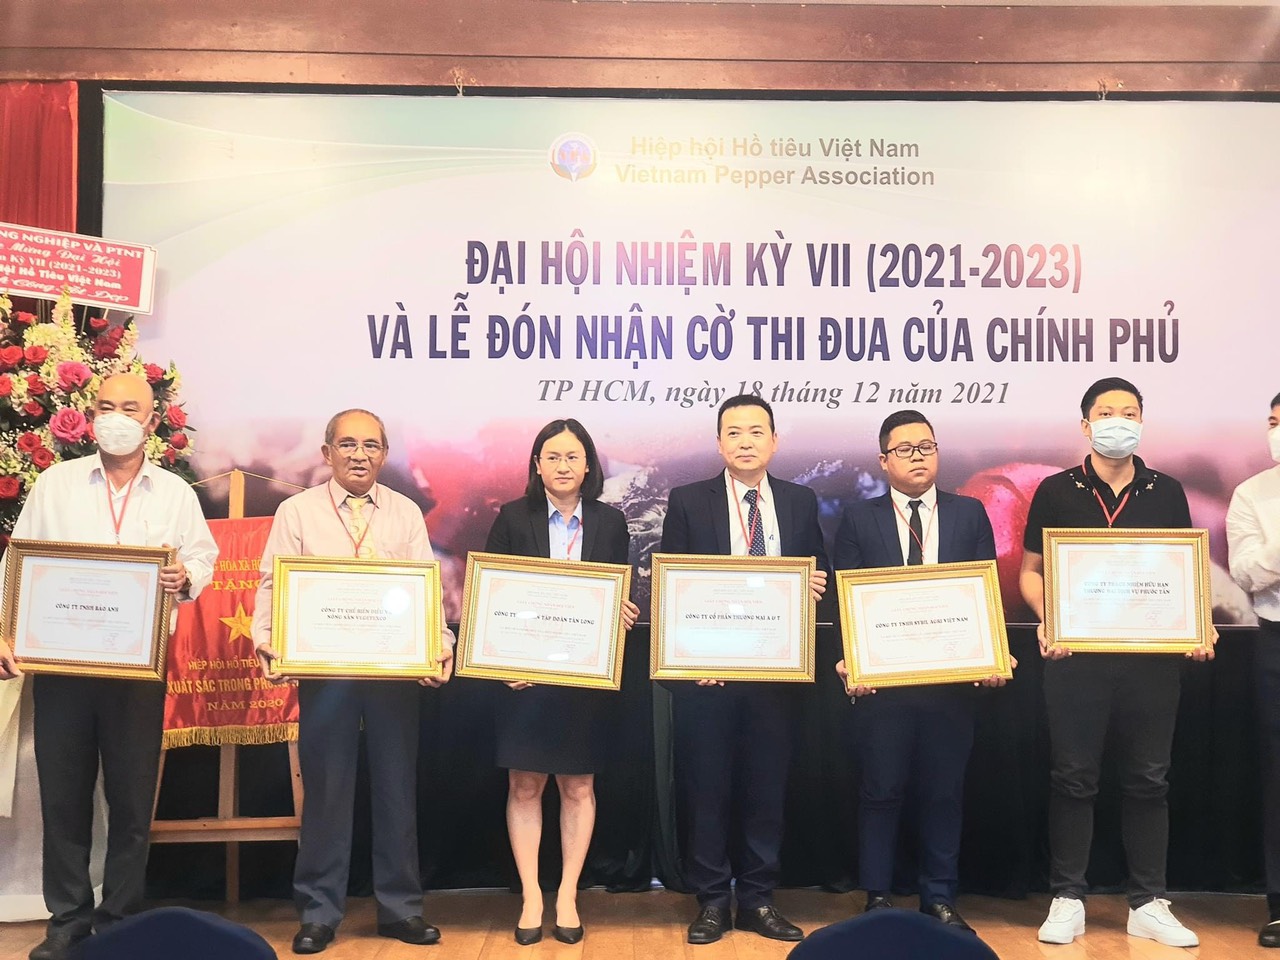 A&T joins the VII Congress of the term (2021-2023) of Vietnam Pepper Association Congress